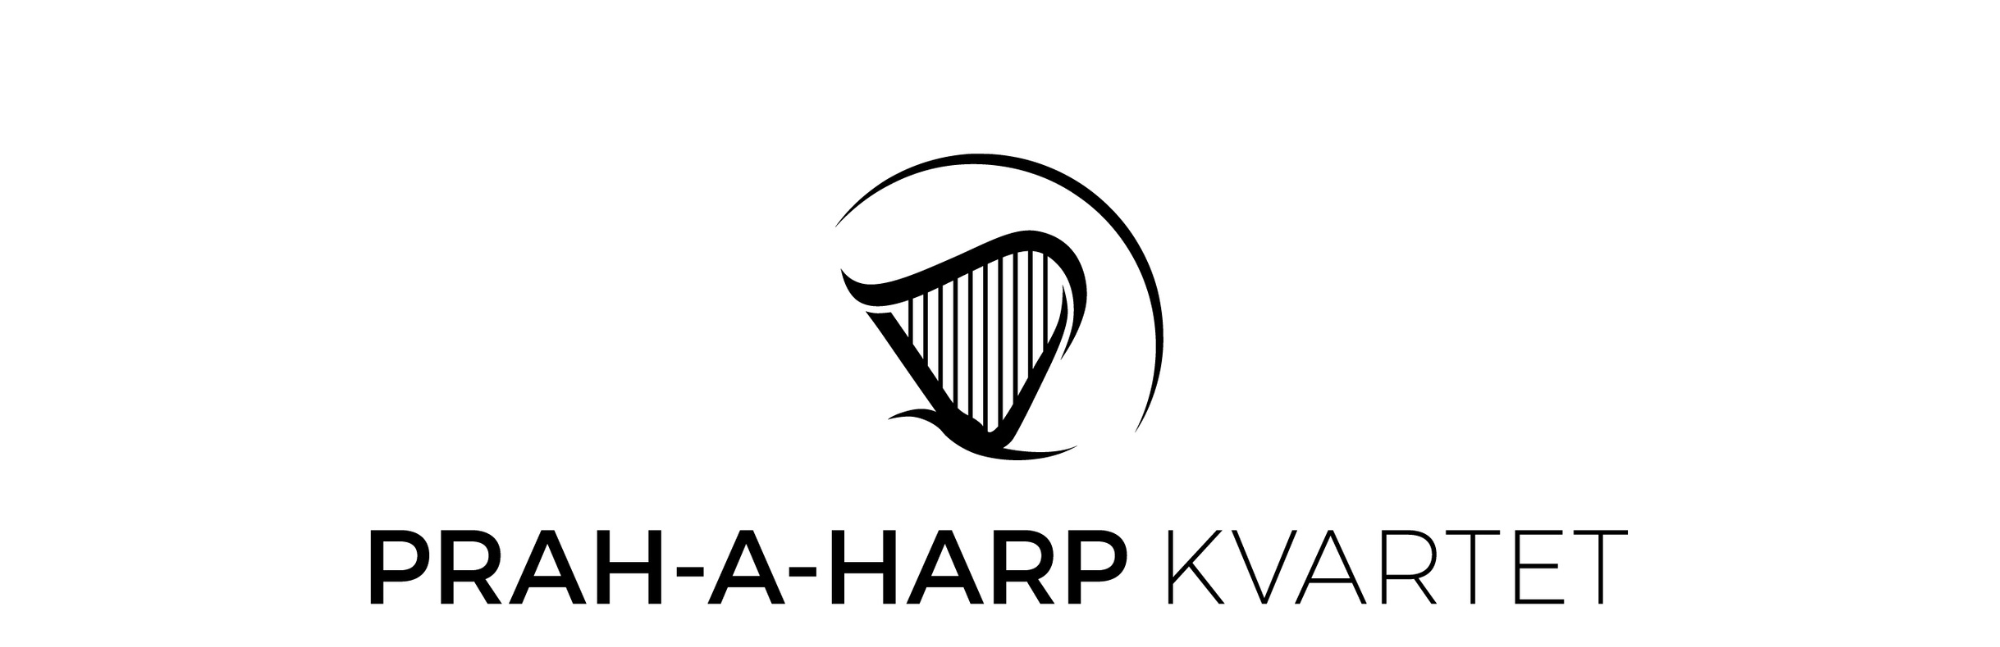 Prah-a-harP